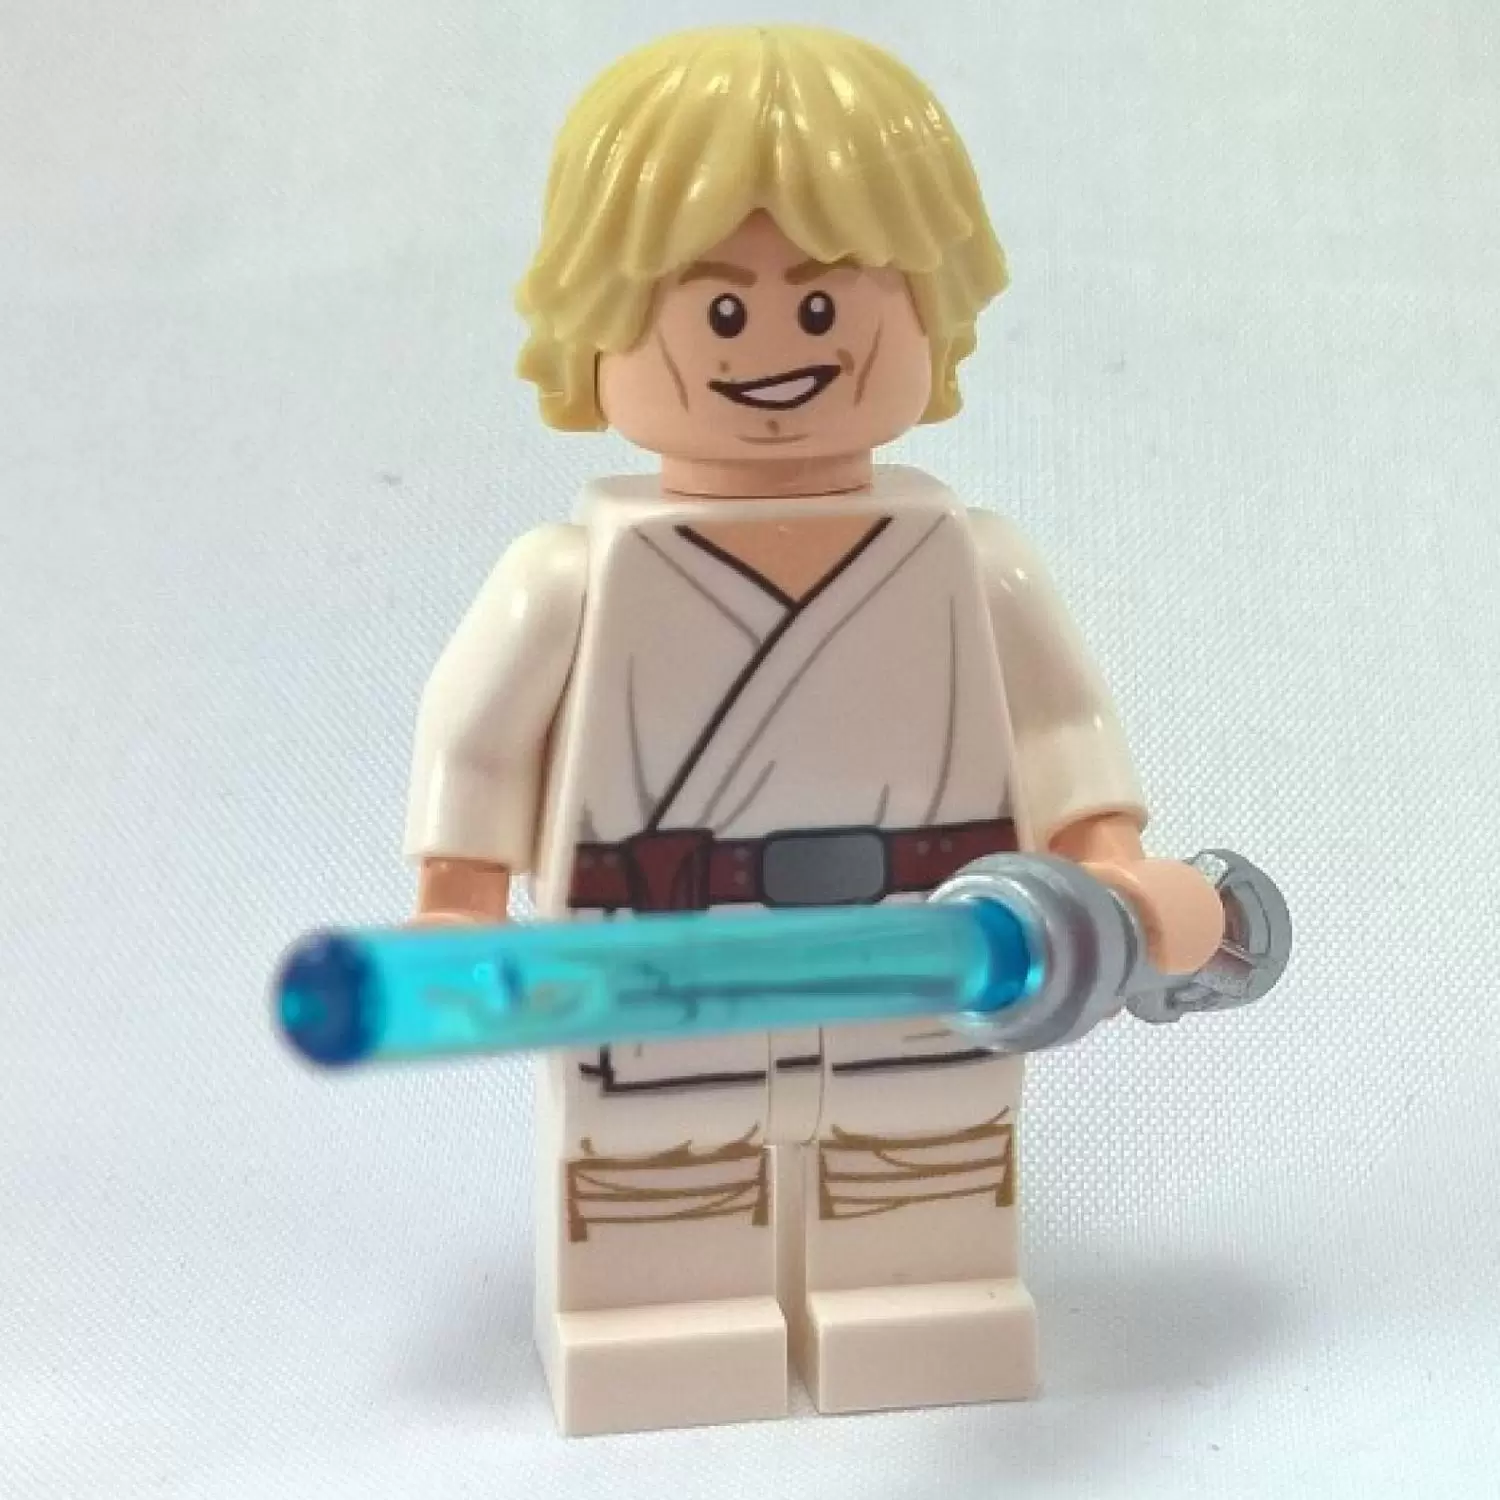 LEGO Star Wars Minifigs - Luke Skywalker